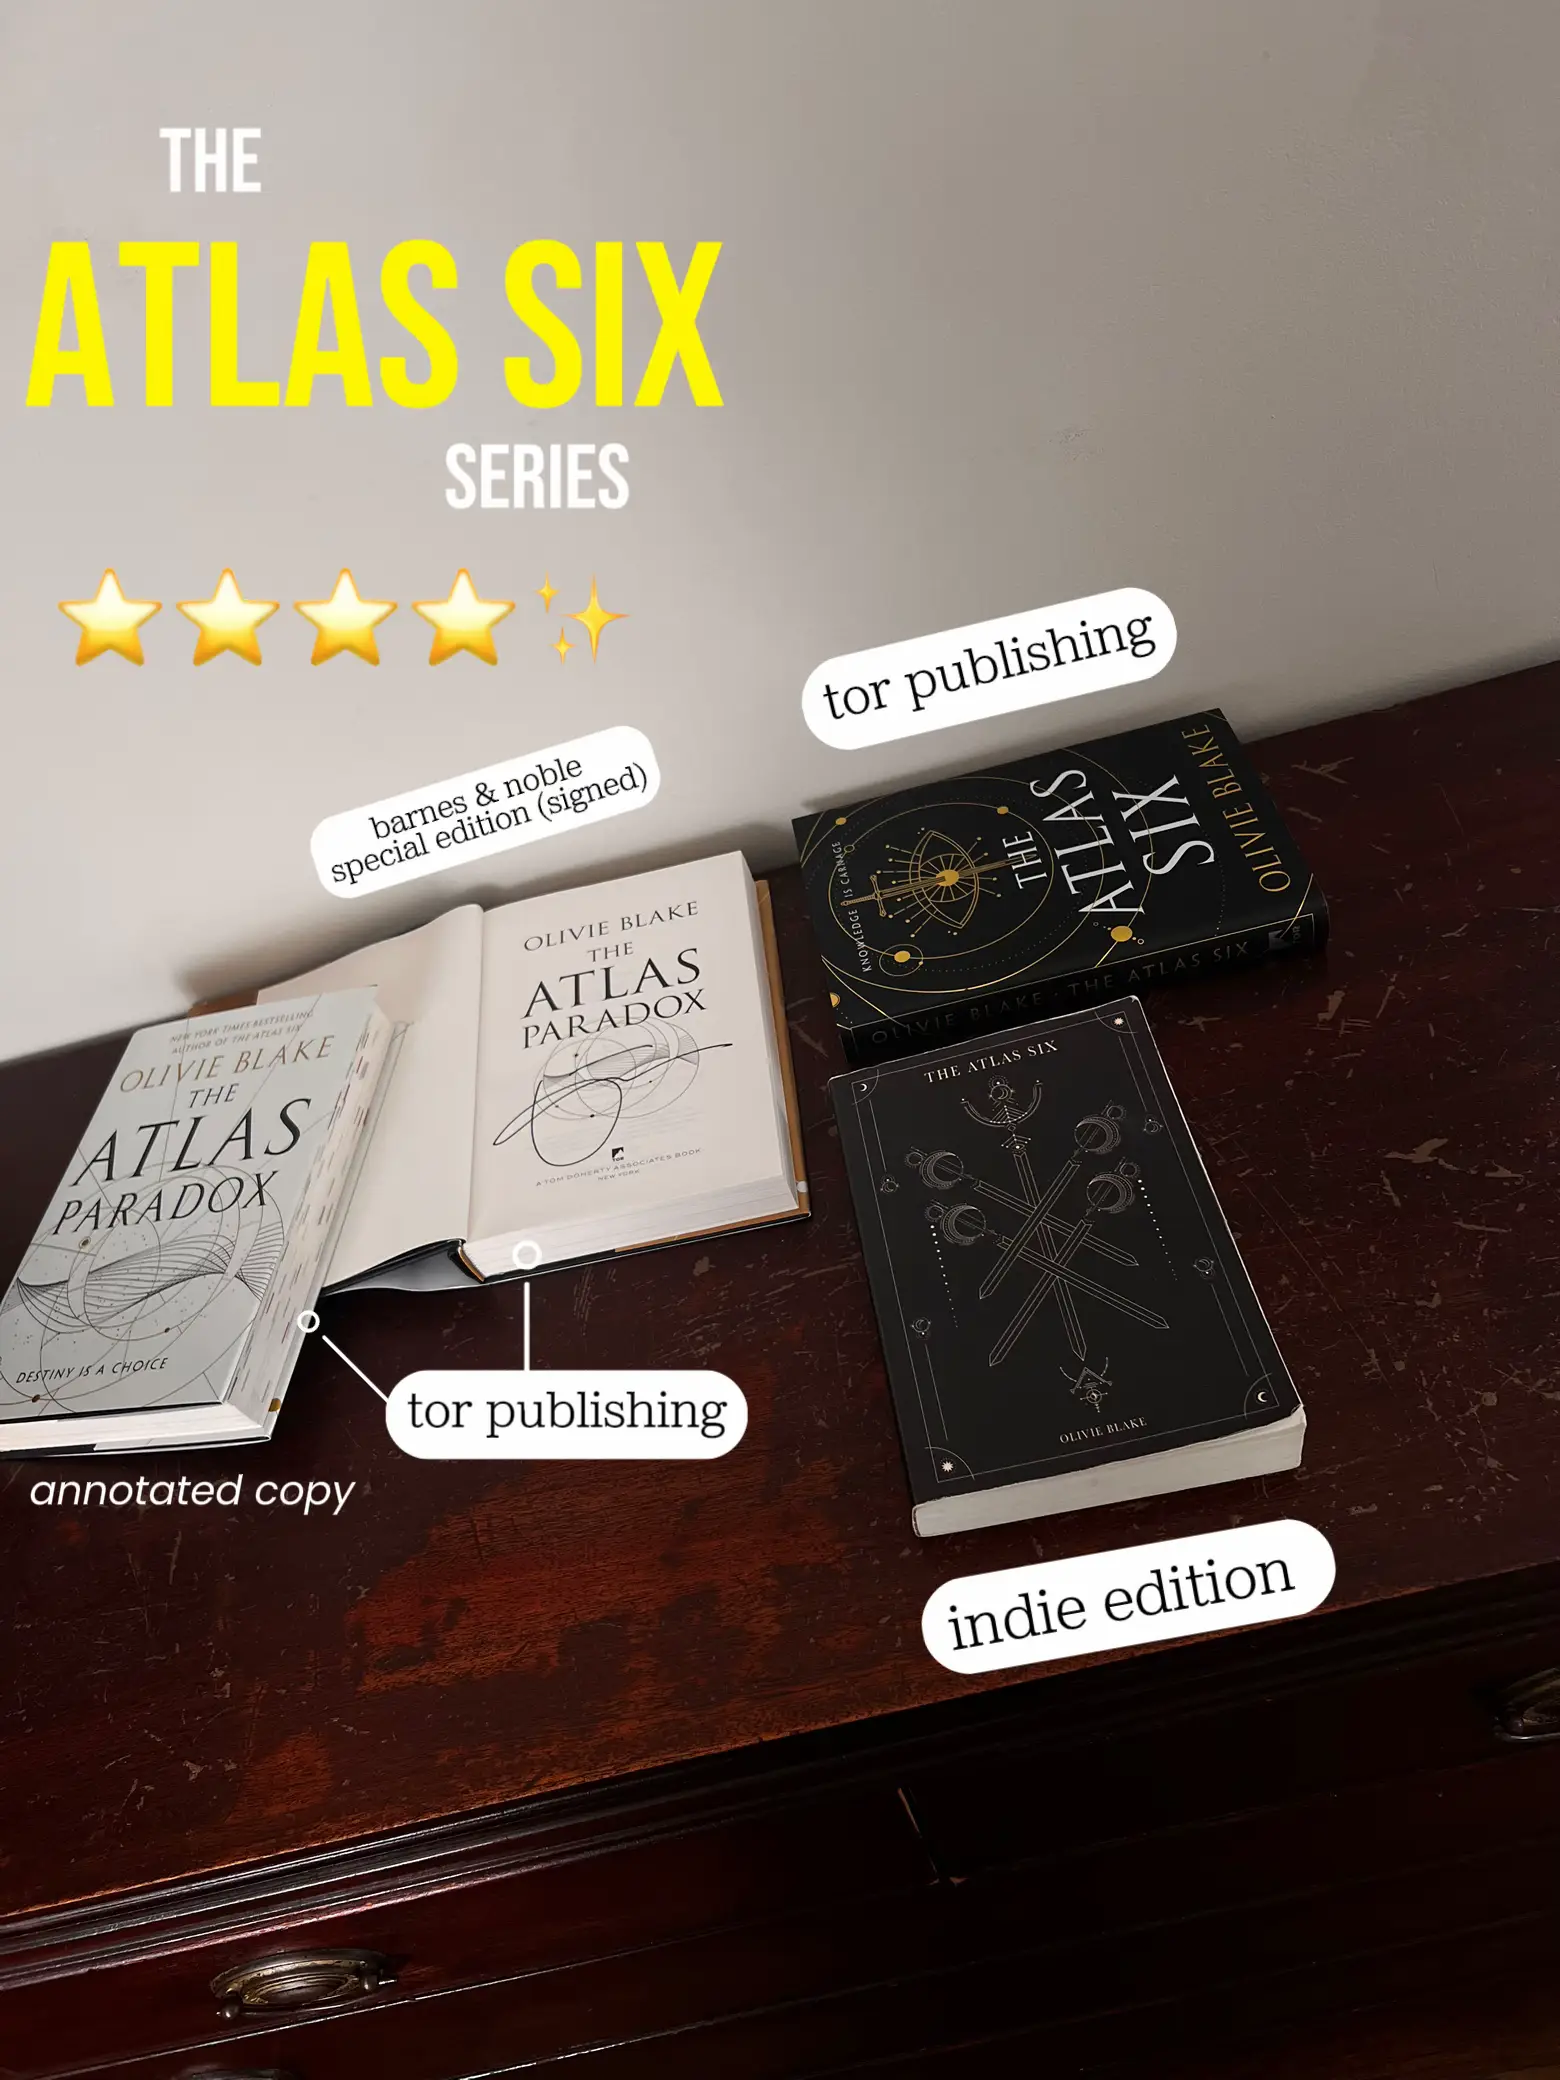 the atlas six - Lemon8 Search